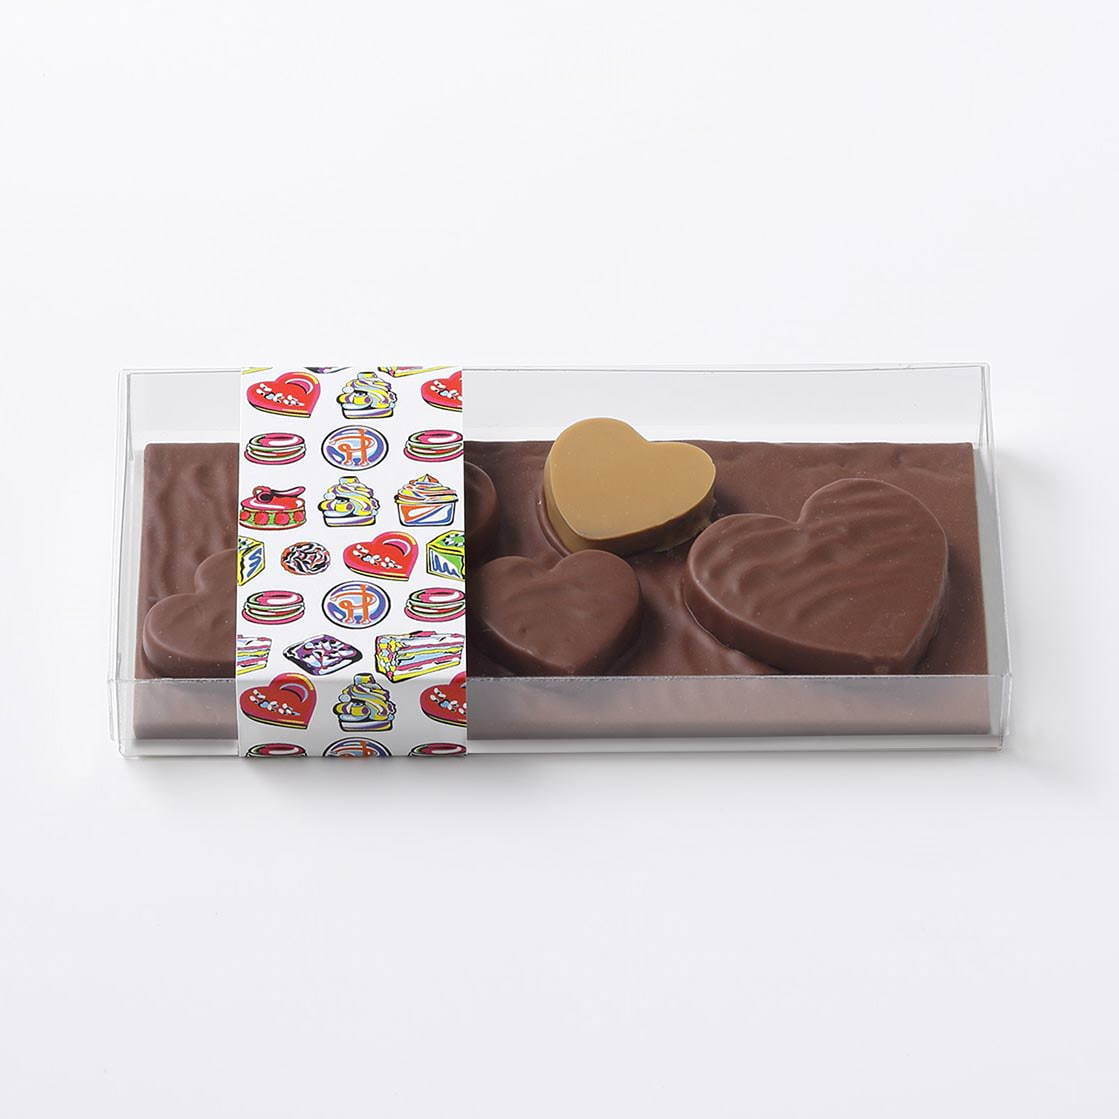 ピエール・エルメ・パリのバレンタイン"杉の実"チョコレートやショコラマカロン、ハート型ケーキも｜写真3